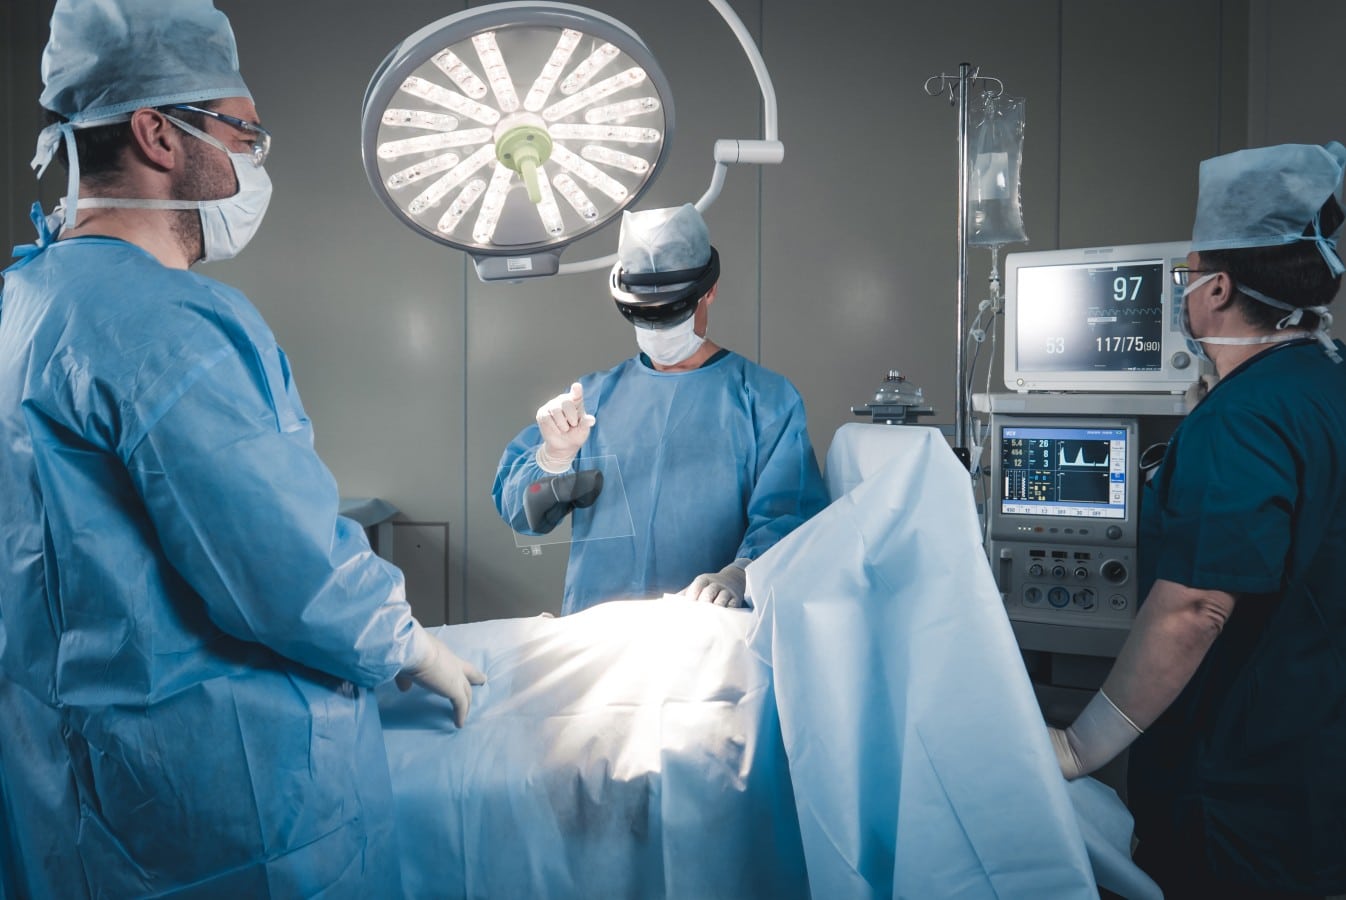 Virtual Masterclass Robotic Liver Surgery Webinar